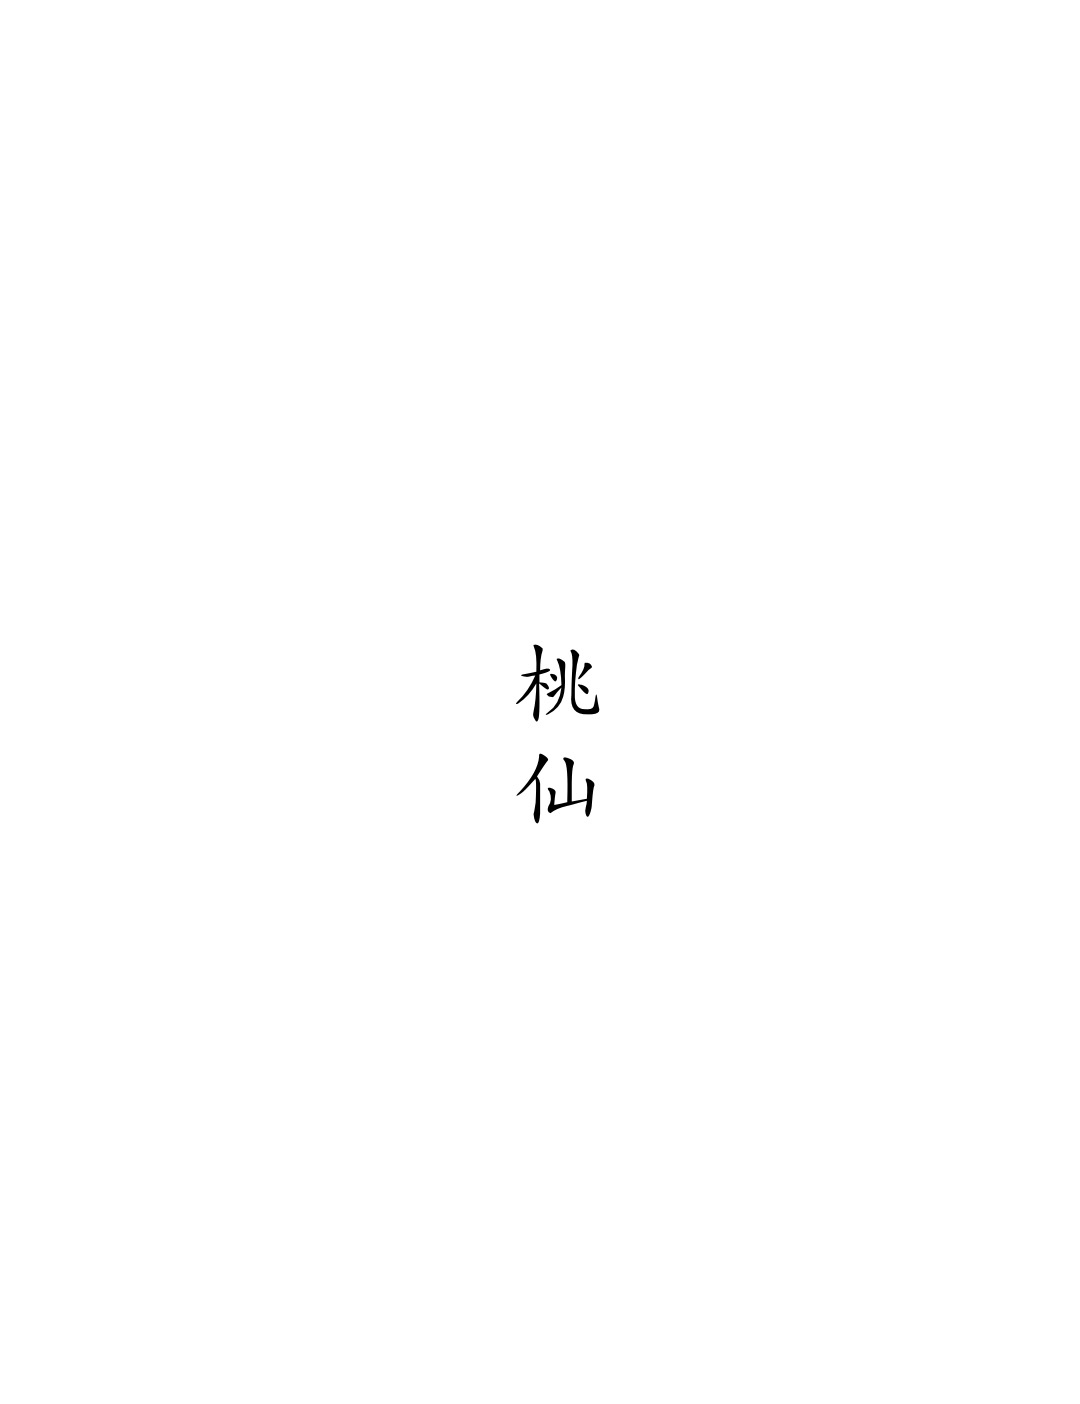 桃仙logo.jpg